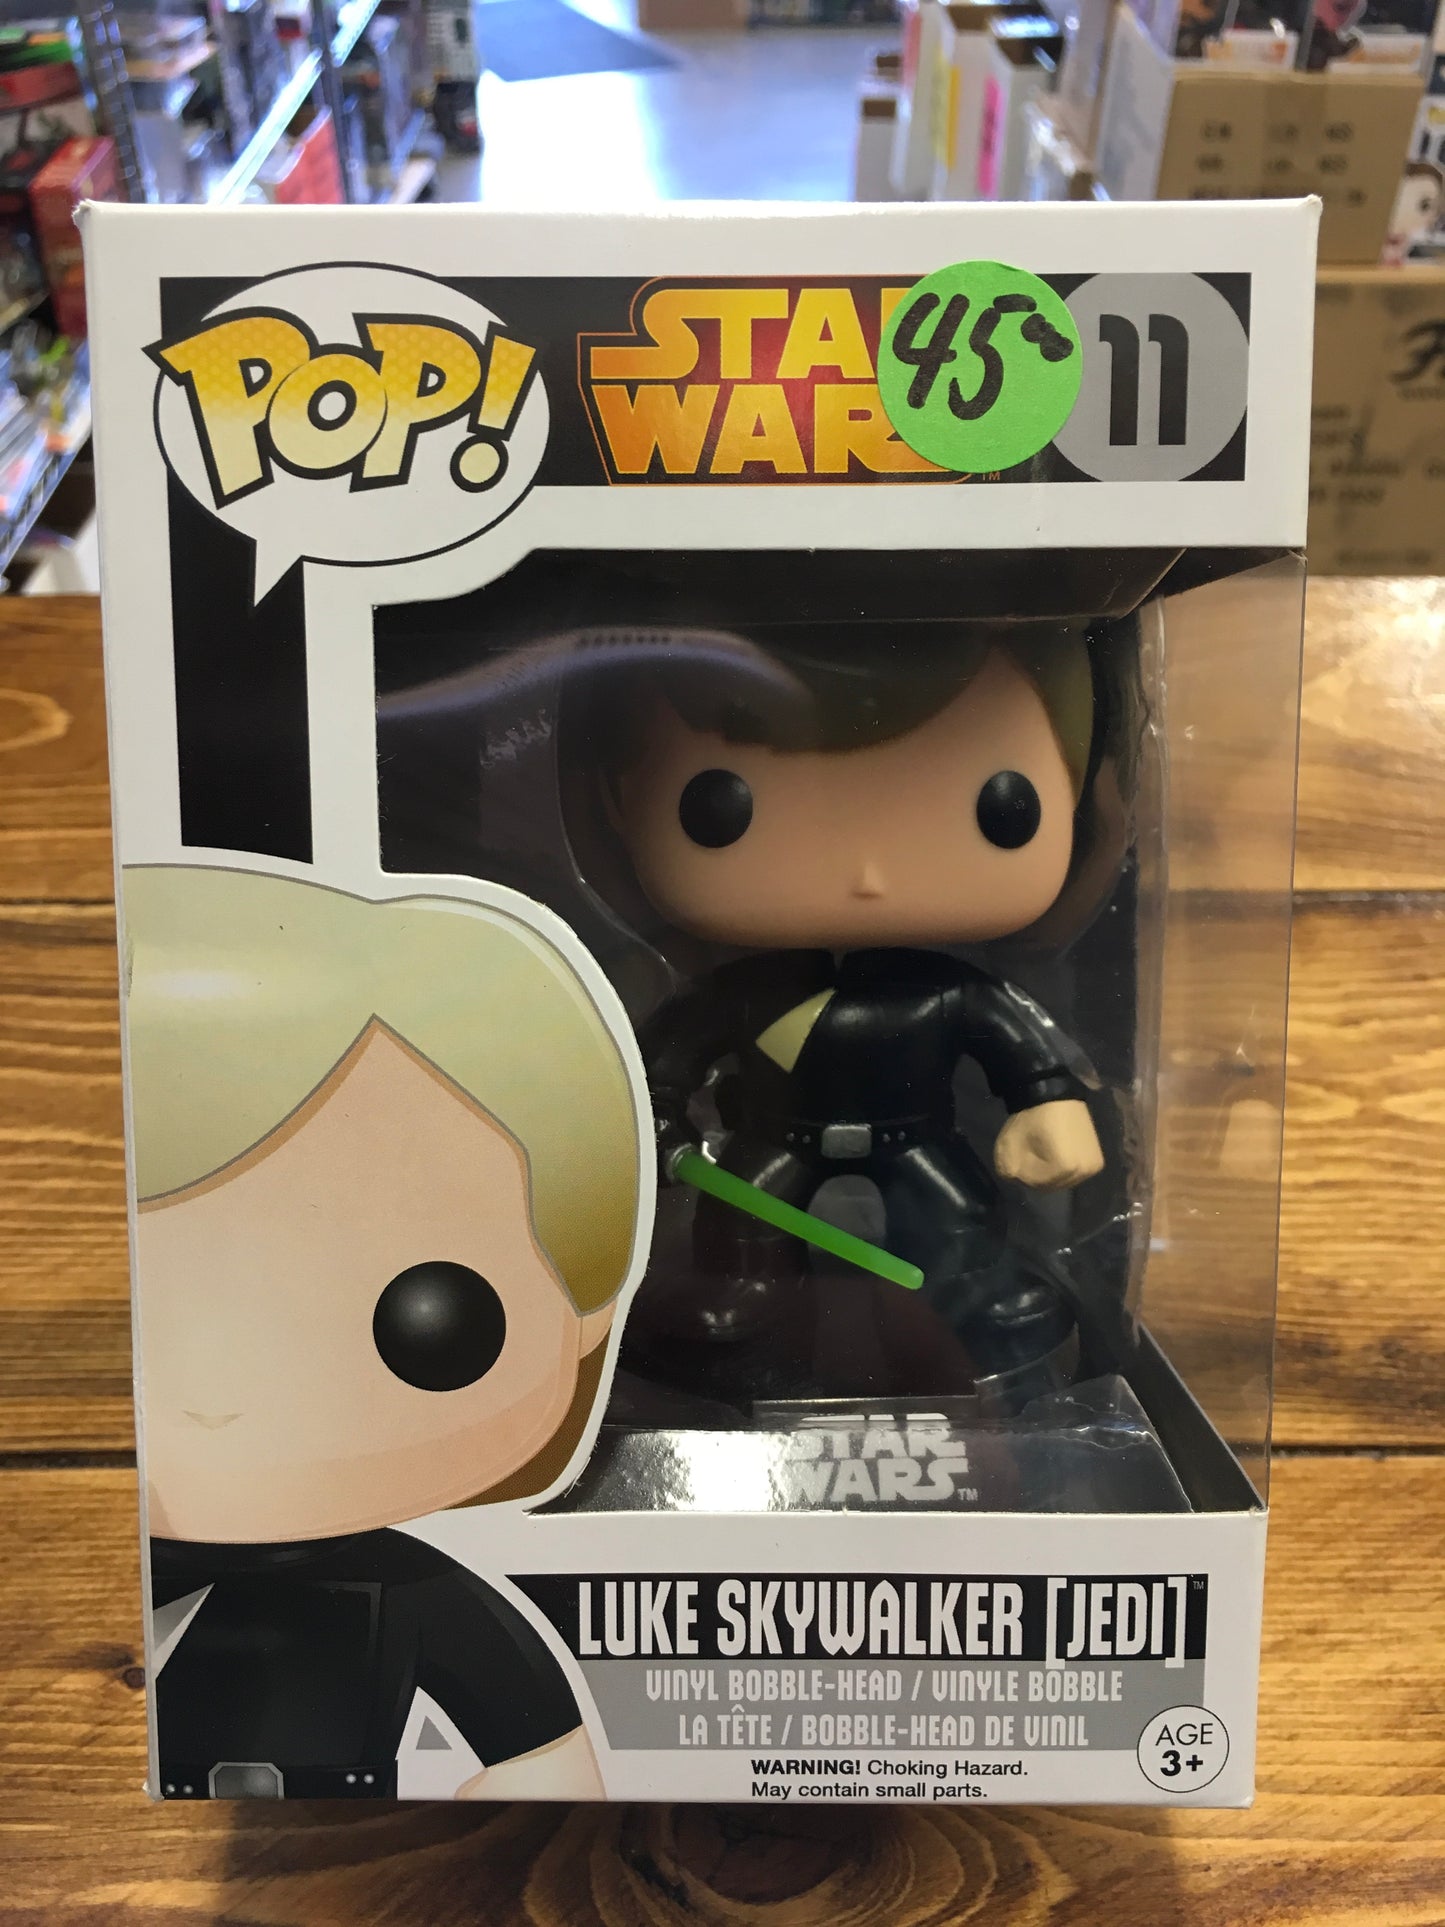 Star Wars Luke Skywalker Jedi 11 Black box Funko Pop! Vinyl Figure